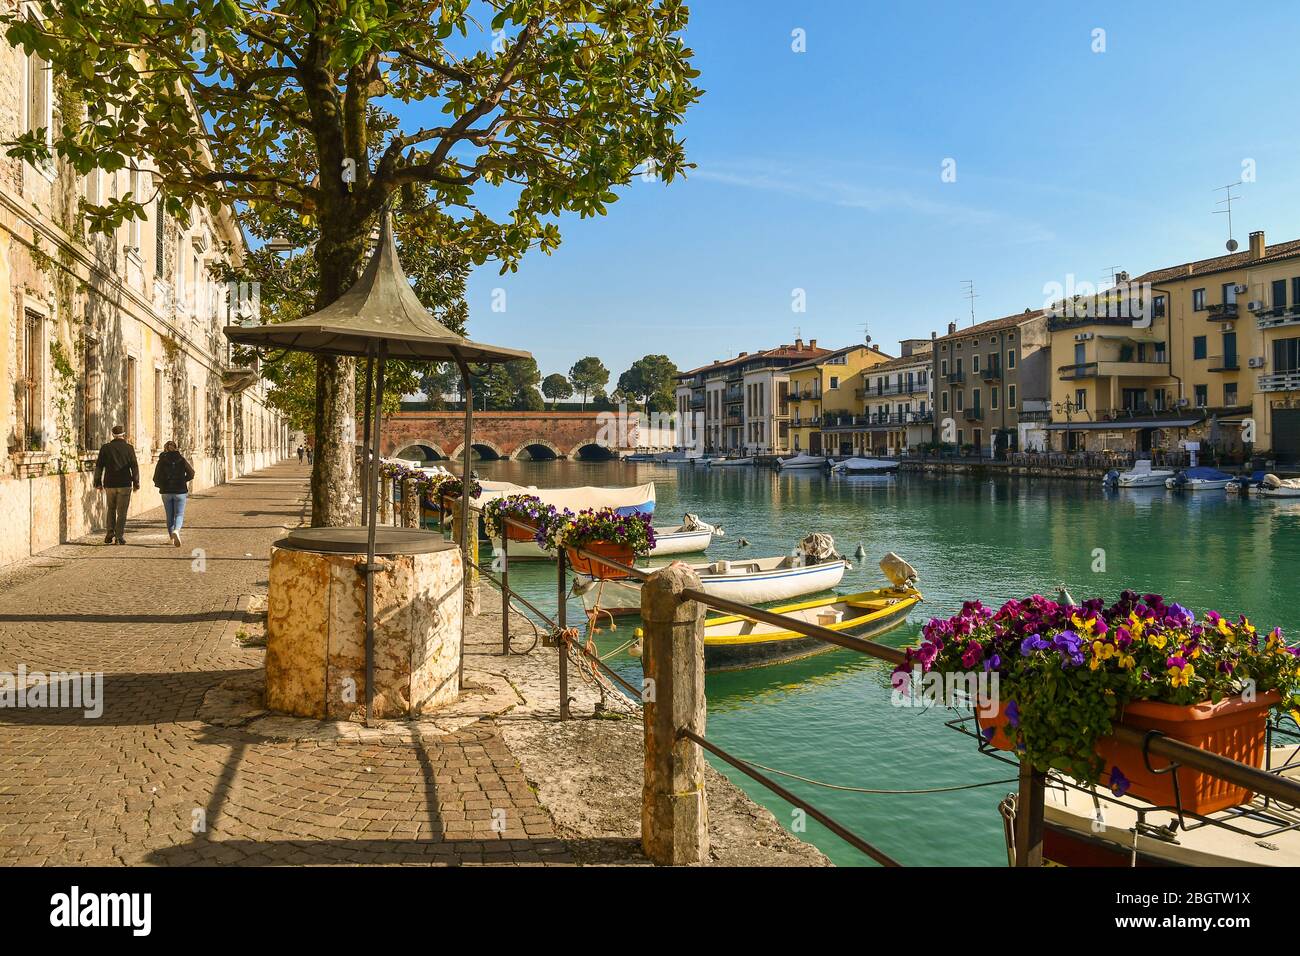 Vue sur le canal de Canale di Mezzo dans la vieille ville (UNESCO W. H. site) avec le pont Ponte dei Voltoni (16 c.), Peschiera del Garda, Vérone, Italie Banque D'Images